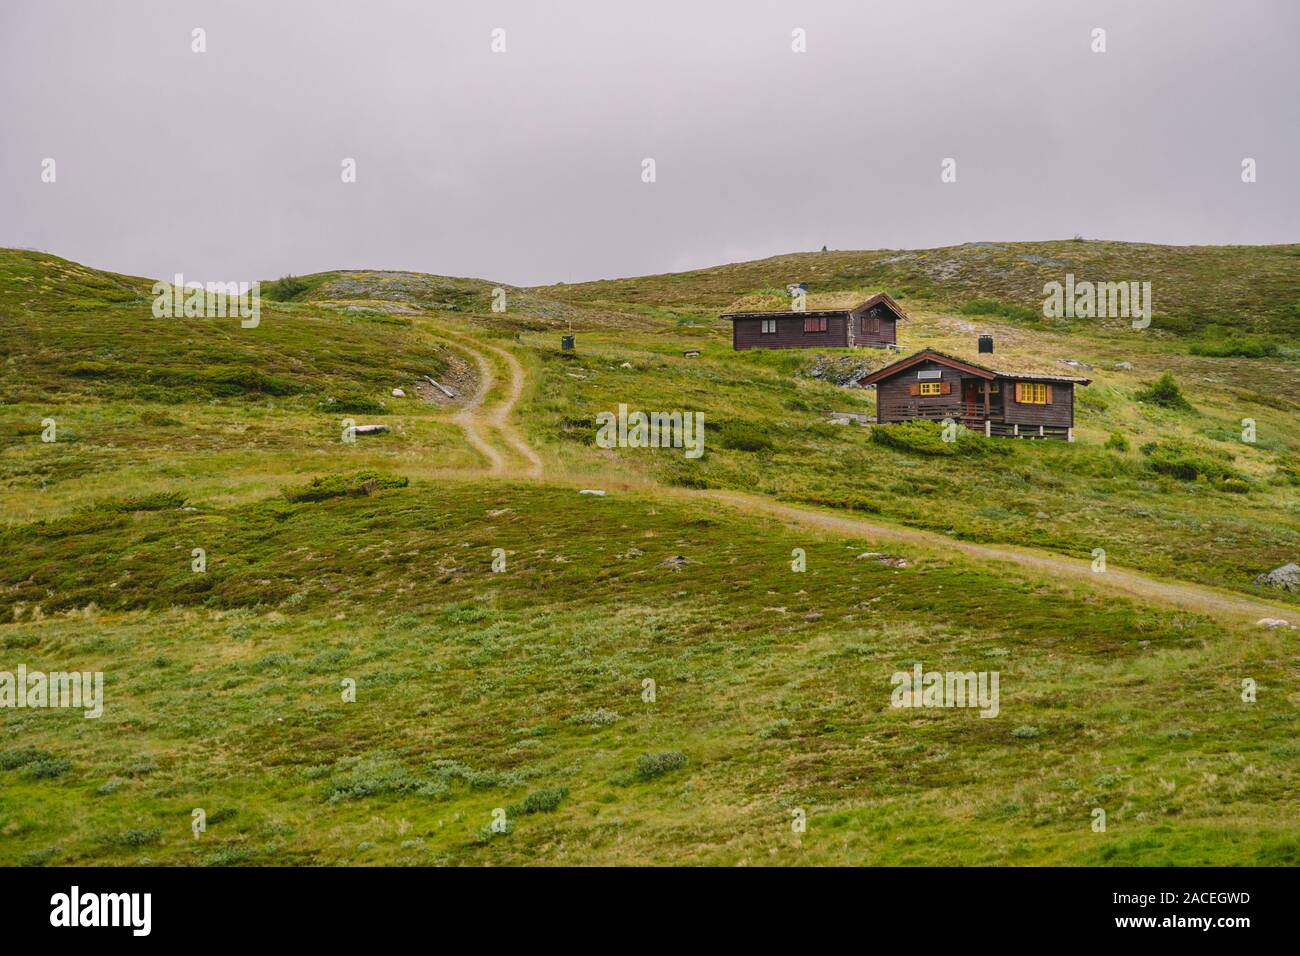 En bois cabane col de montagne refuges de montagne en Norvège. Paysage norvégien avec des maisons aux toits d'herbe typiquement scandinave. Village de montagne avec de petites maisons Banque D'Images